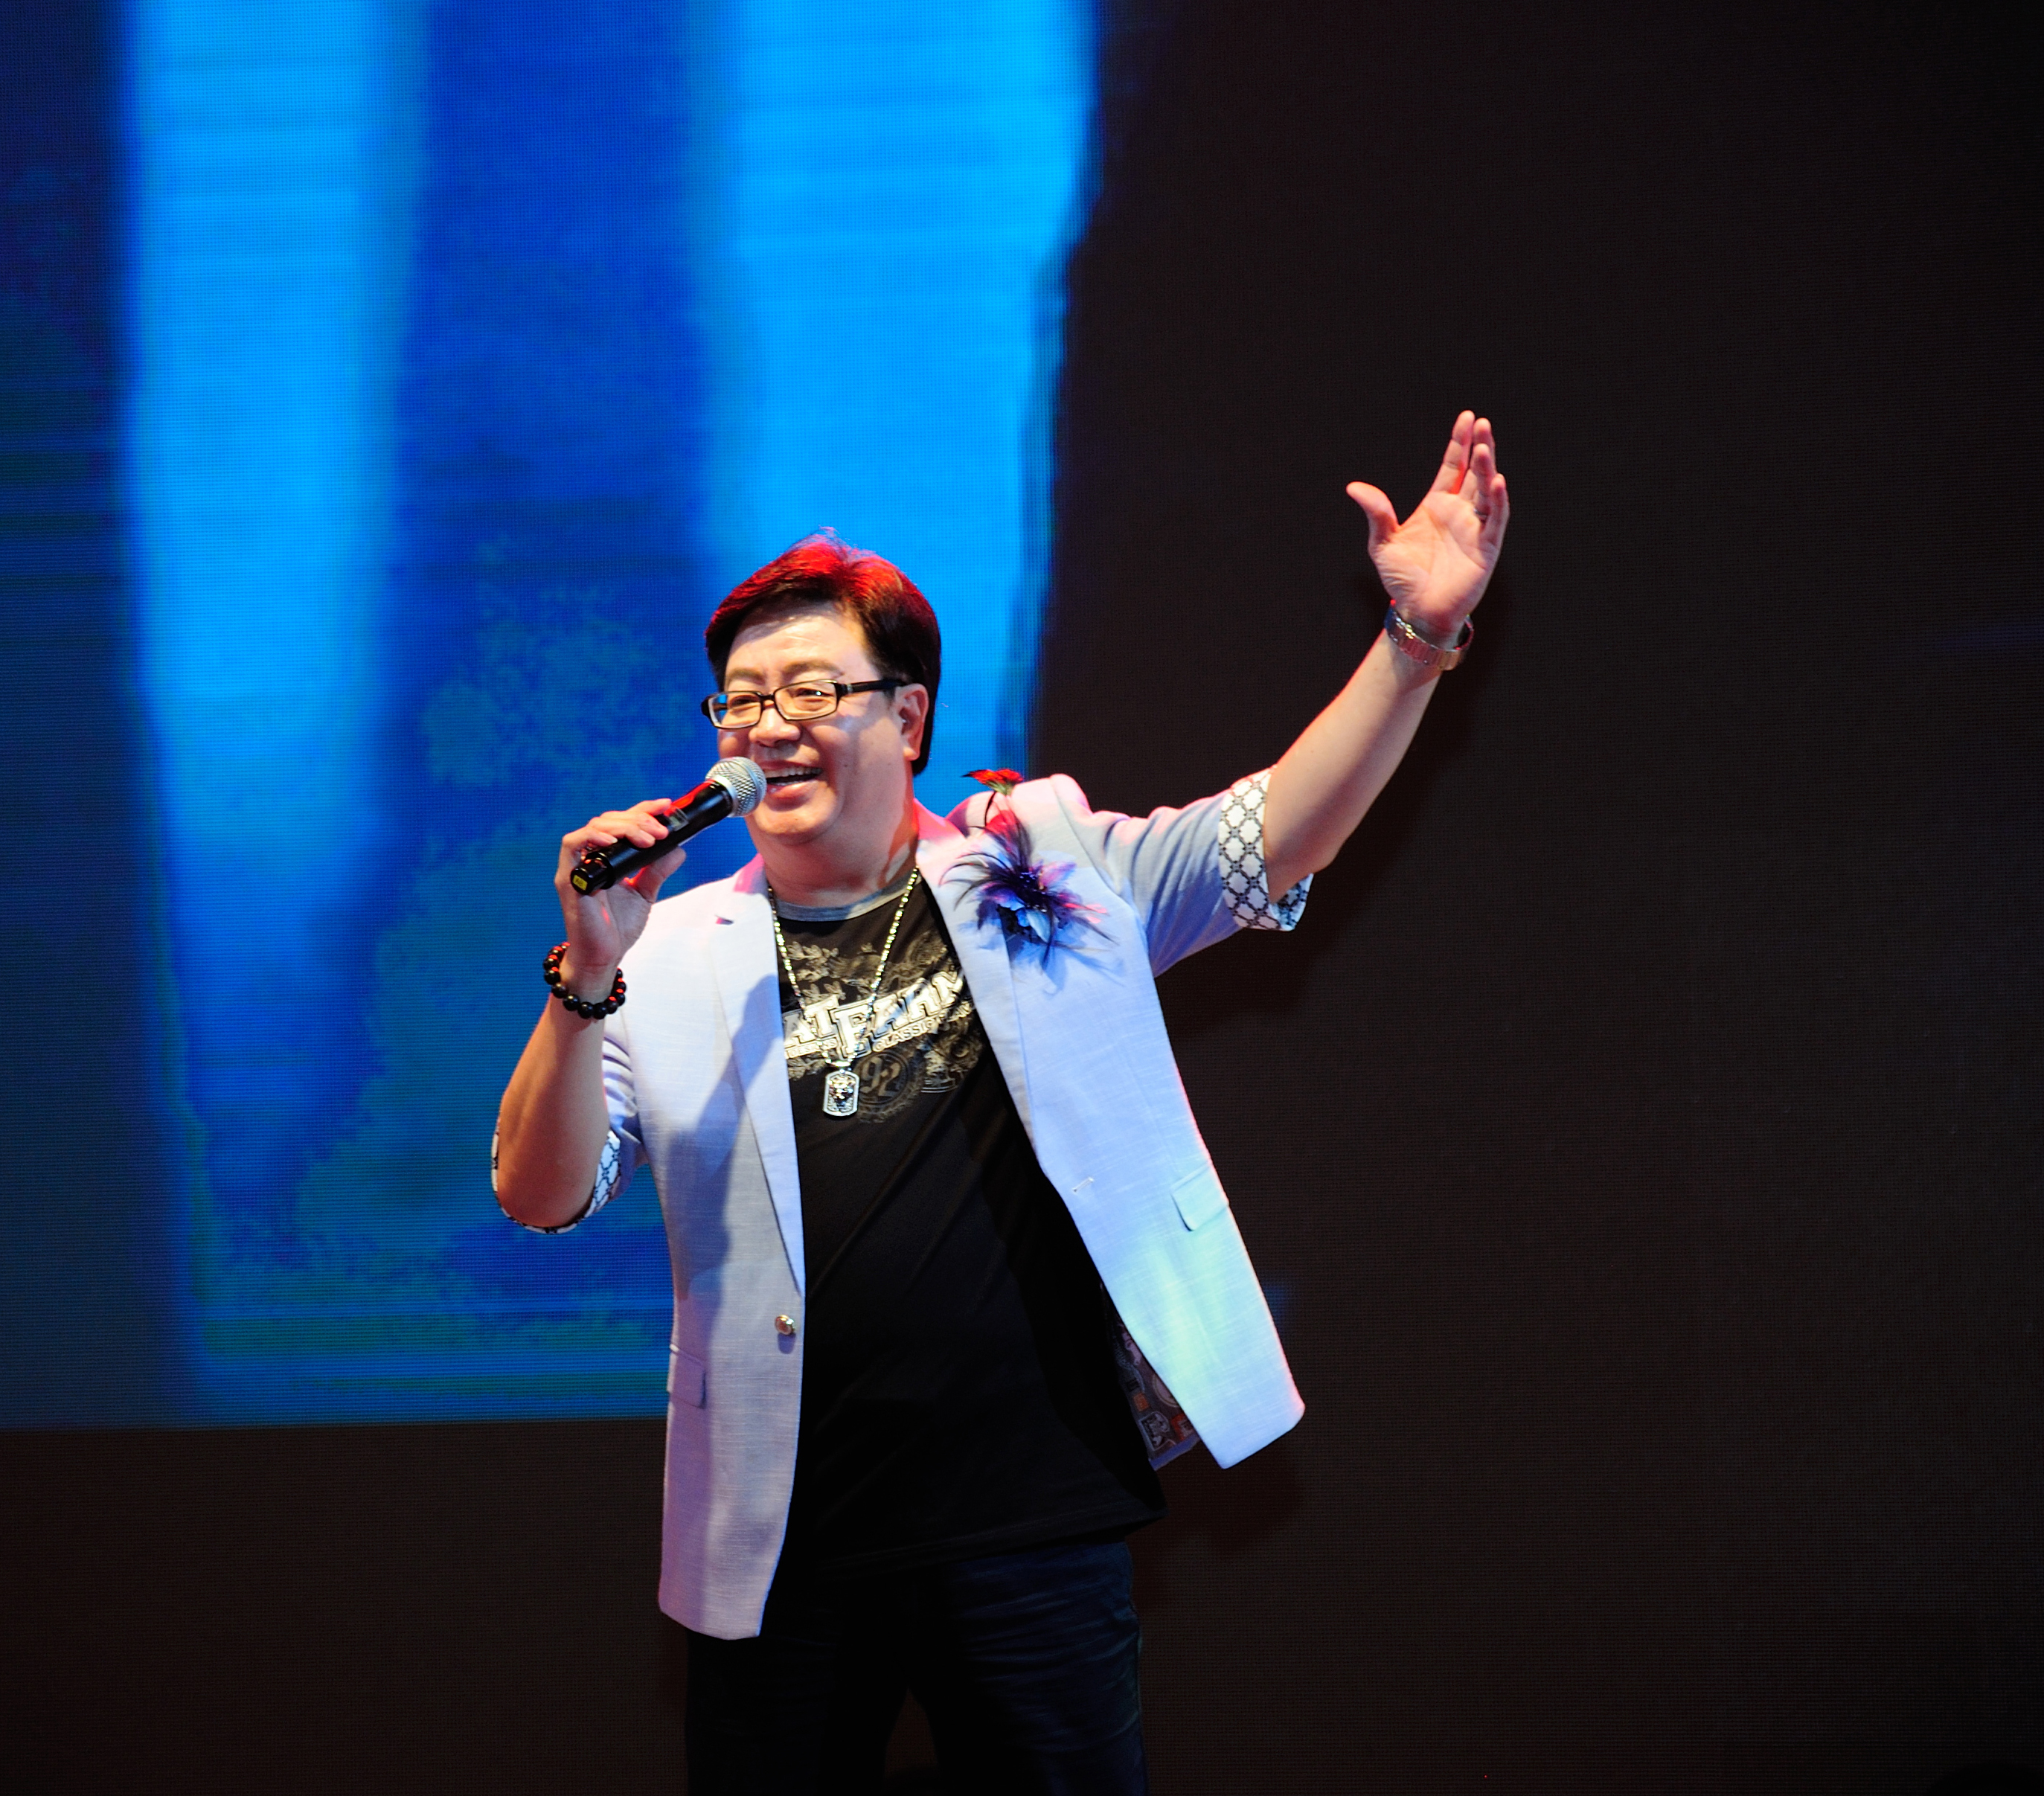 闽南语歌曲的歌手,也是大陆首位在台湾发行闽南语个人专辑的内地歌手